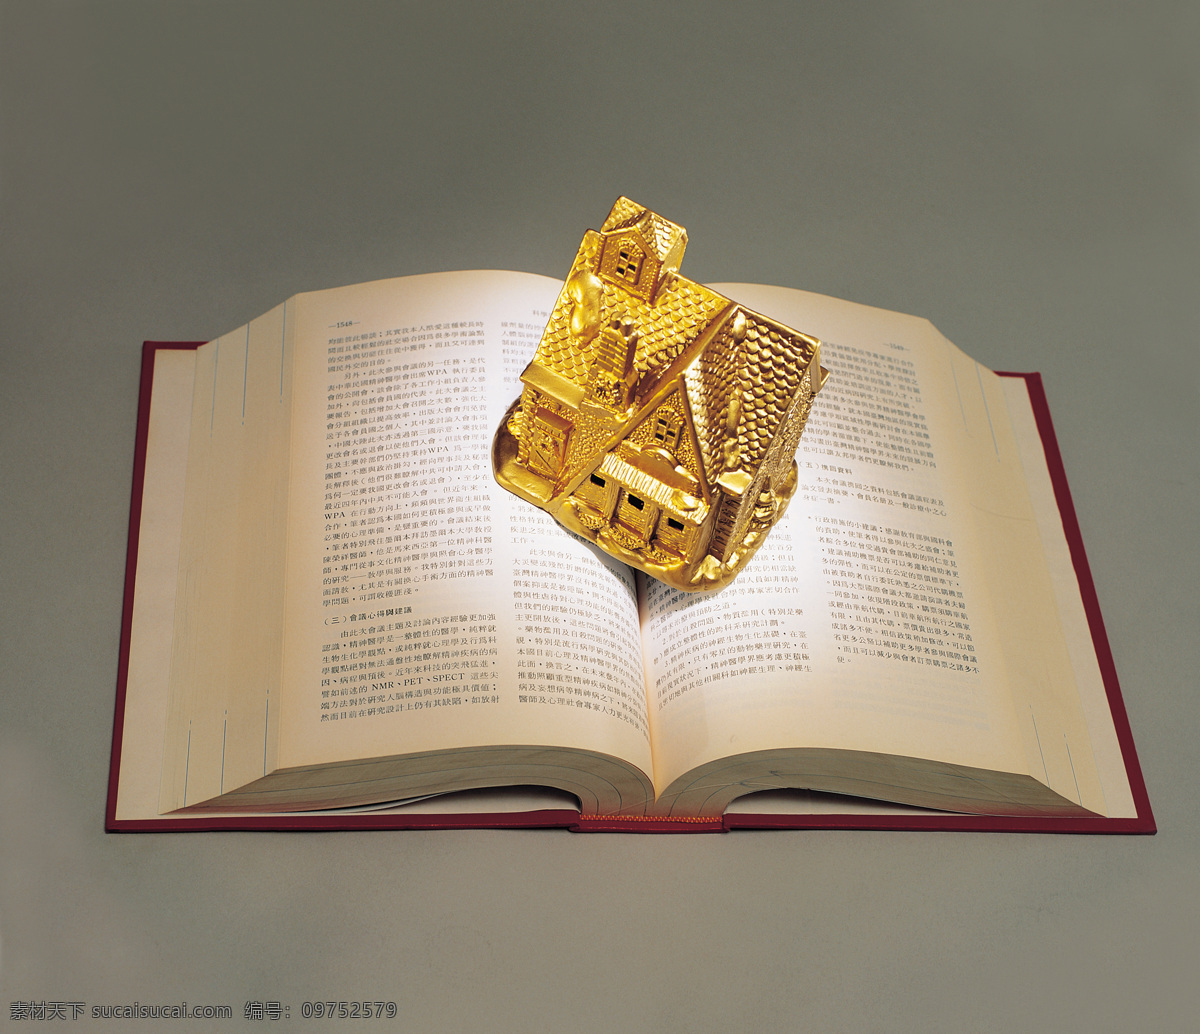 书 中 自有 黄金屋 黄金 金屋 金房子 放在 书上 金 房子 书中黄金屋 知识财富 文化艺术 摄影图库